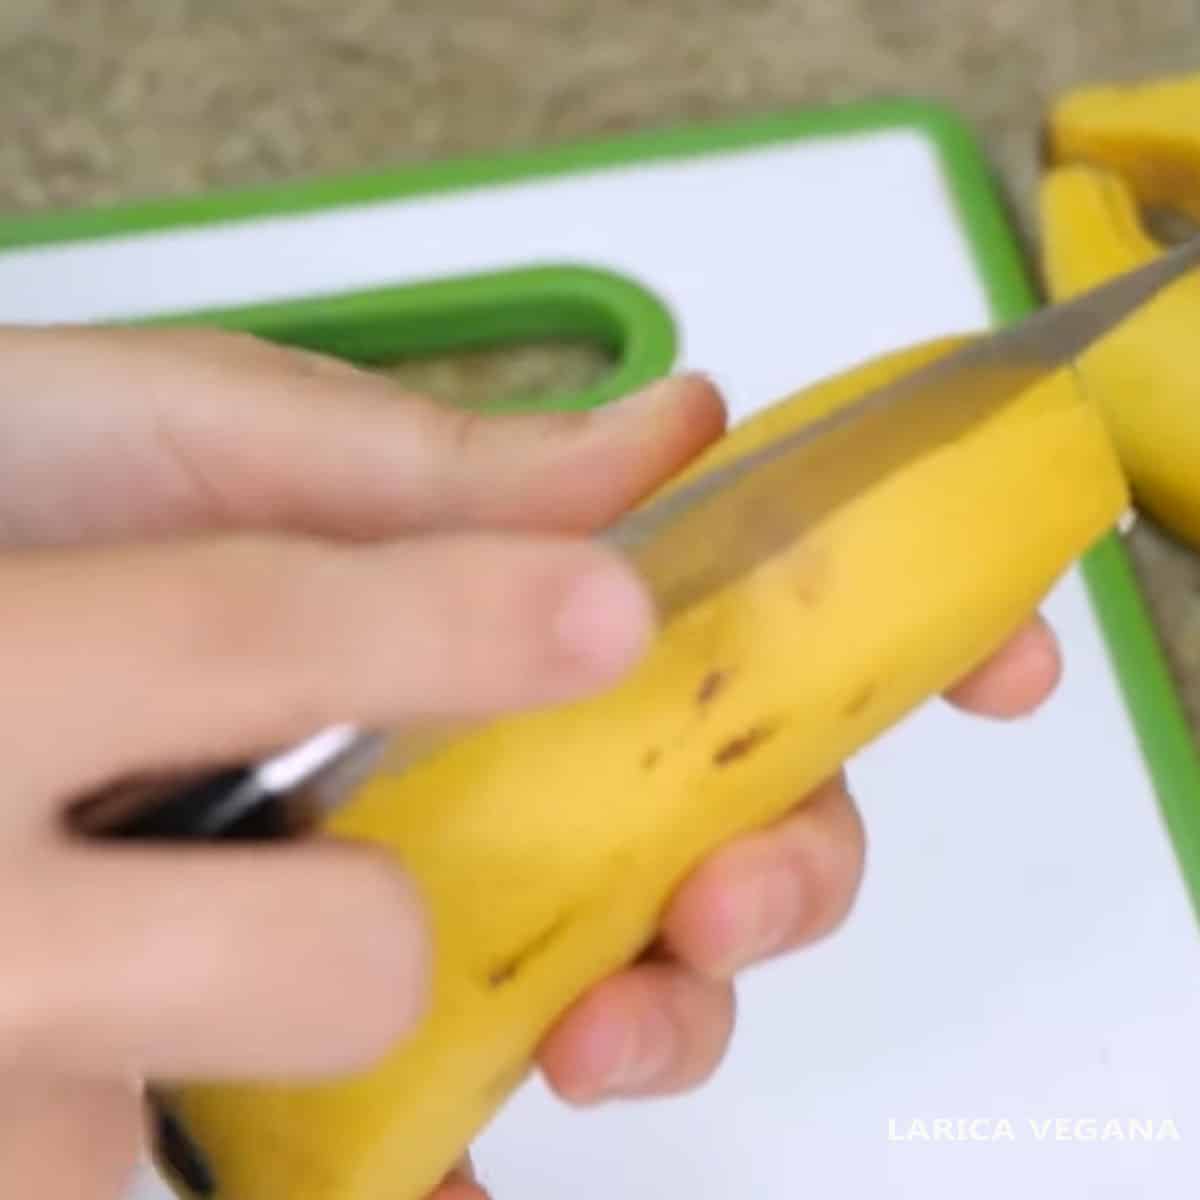 tirando a casca da banana